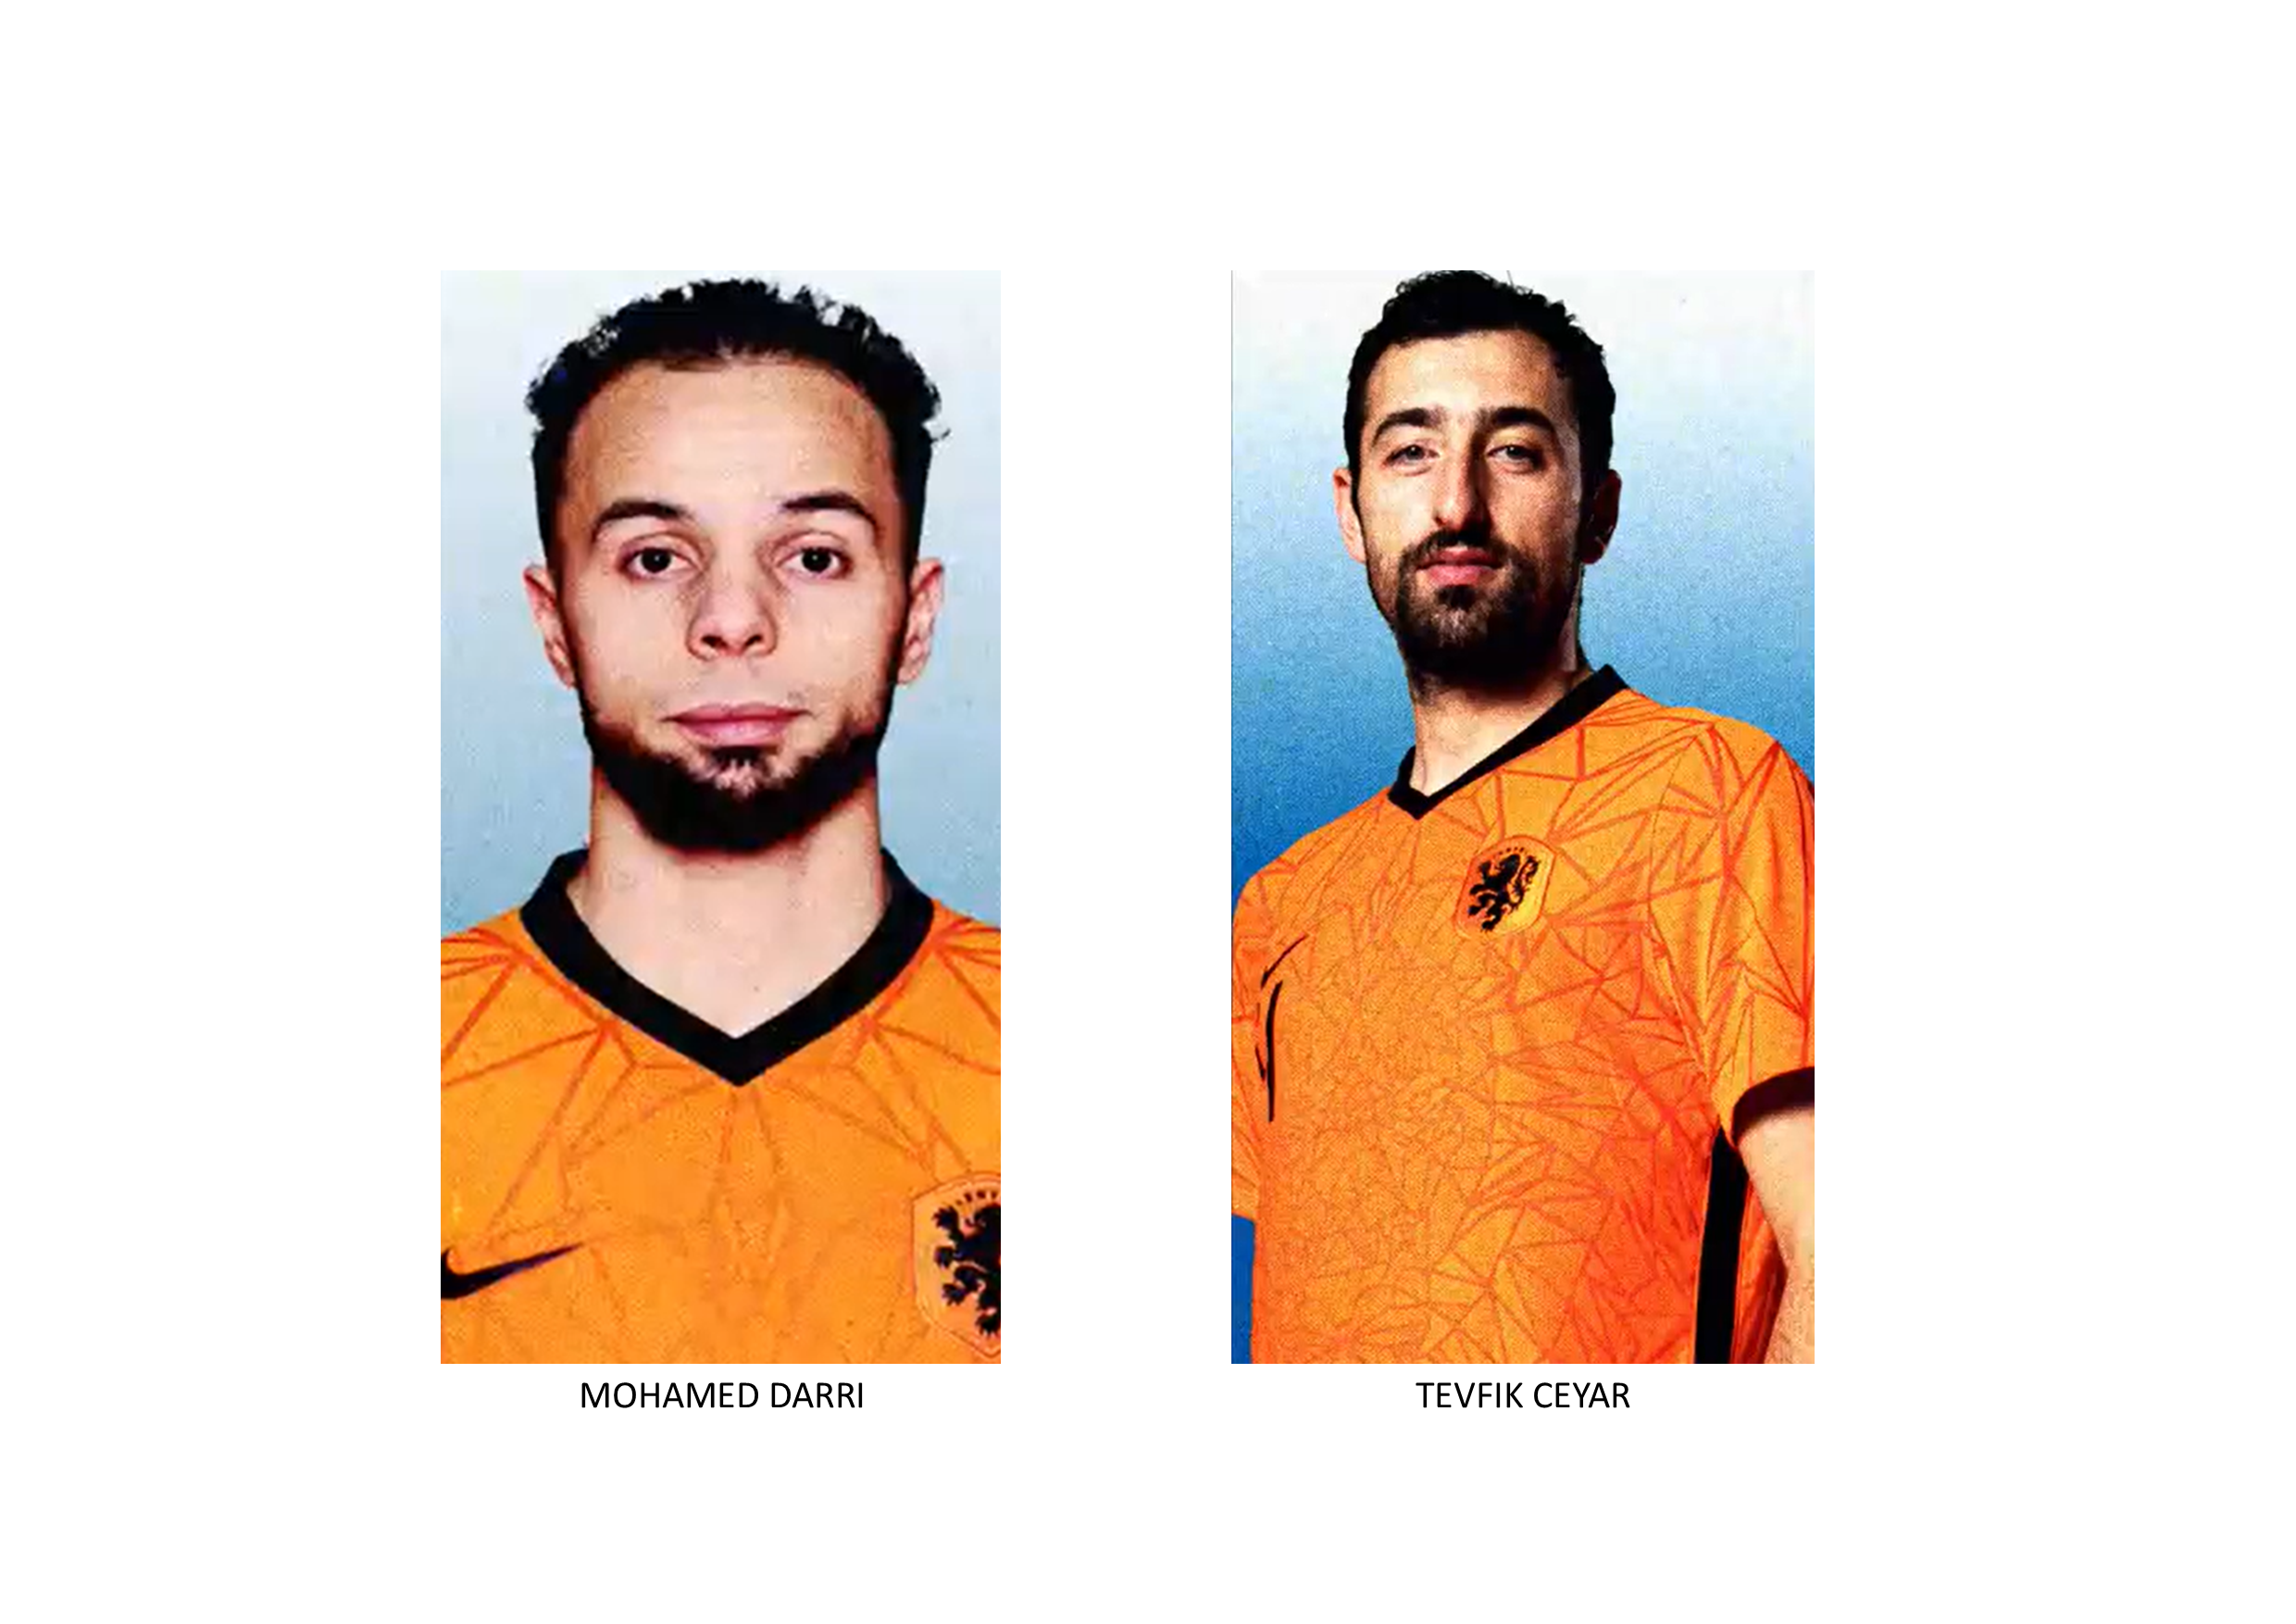 Oranje Futsal heeft de eerste afmeldingen binnen voor het EK Futsal 2022